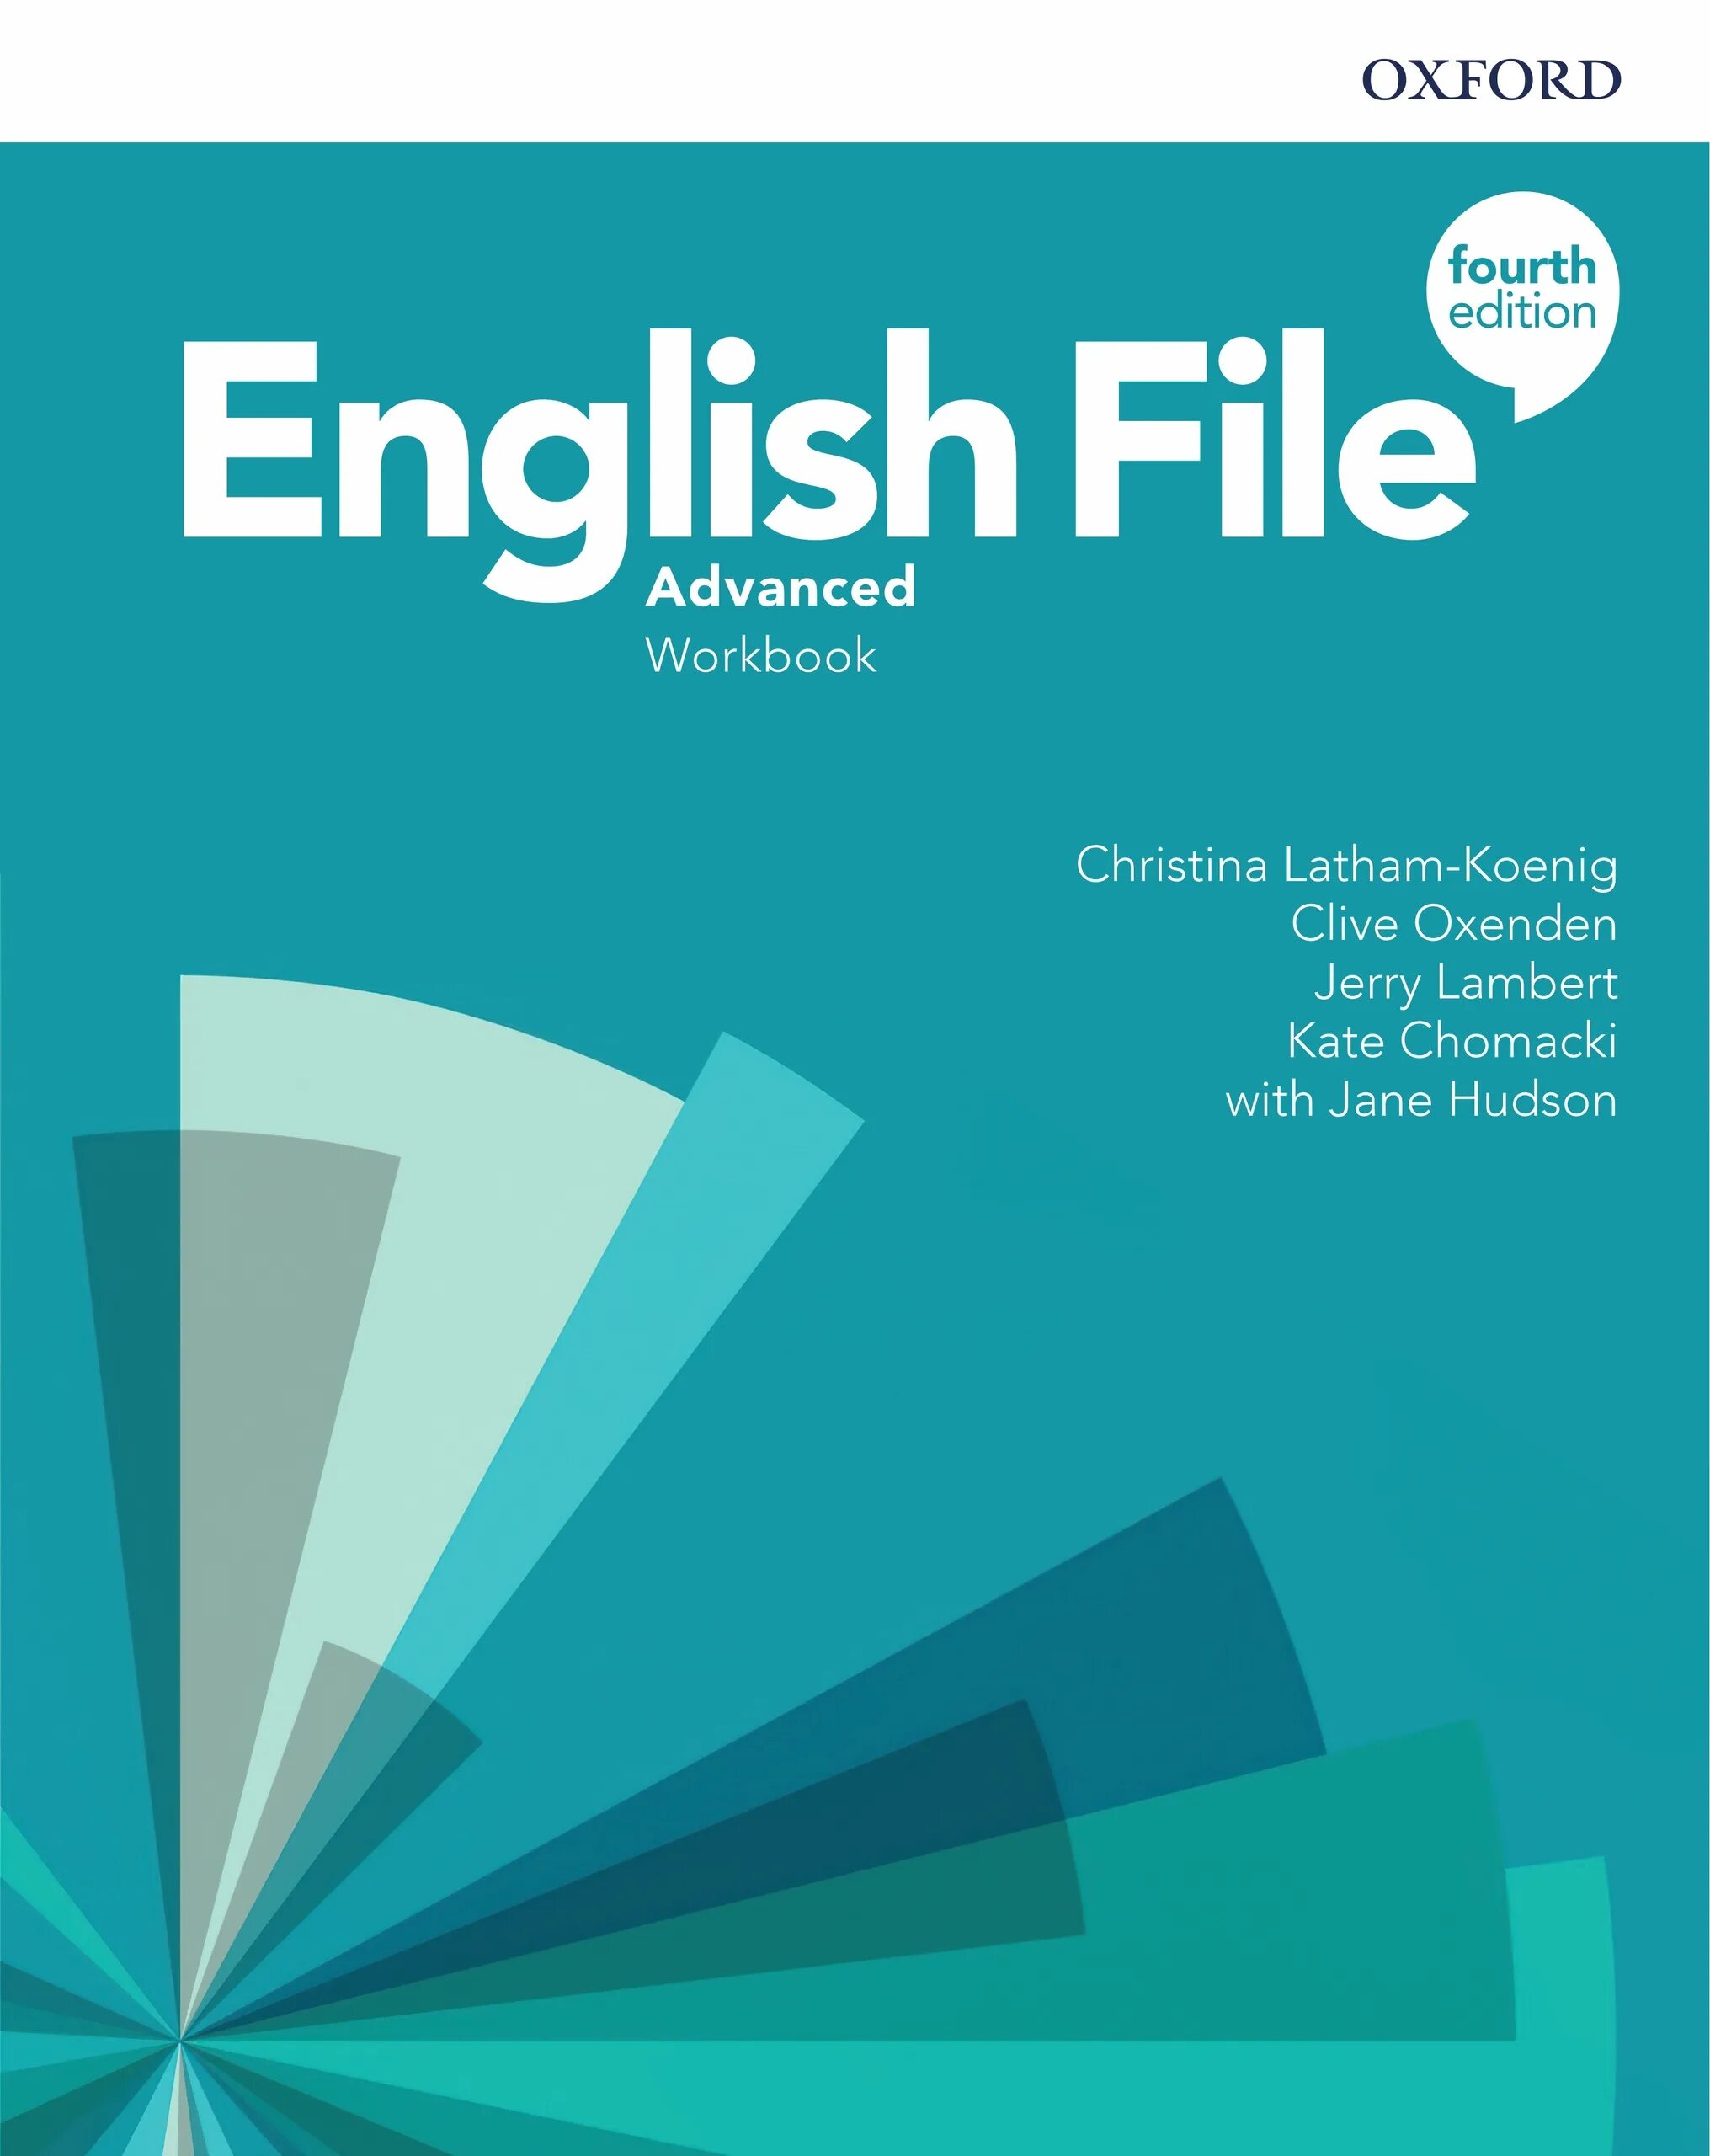 English file Advanced 4th. English file Advanced 4th Edition. English file 4 Advanced. English file Advanced Plus. English file advanced workbook